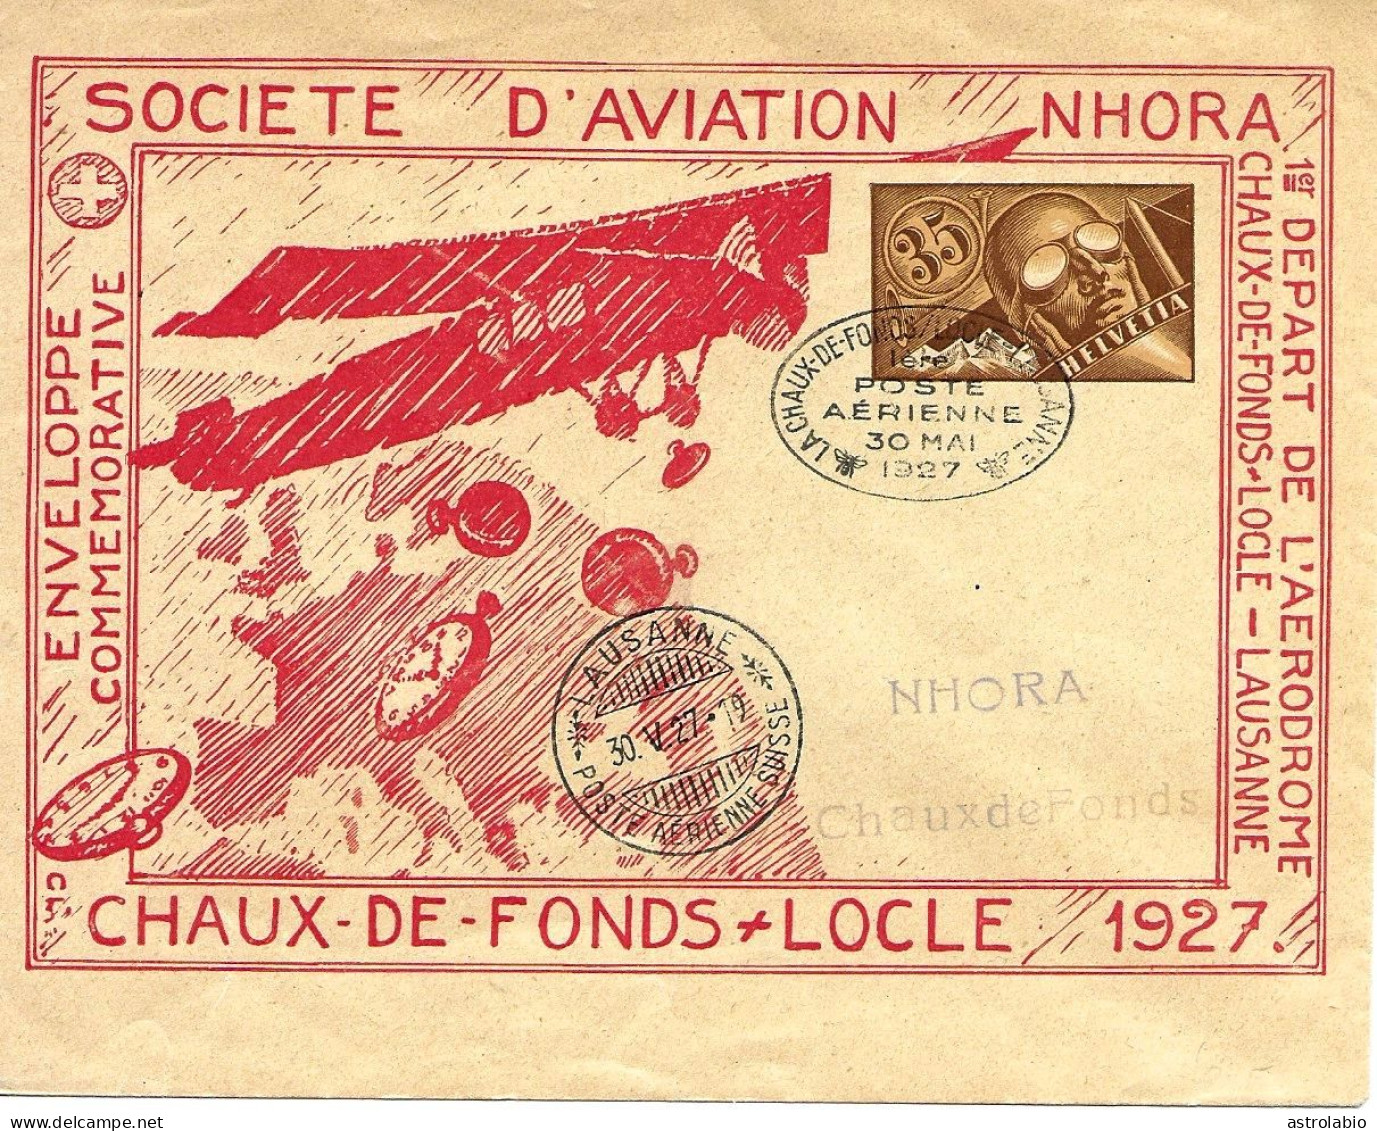 Navigation Horlogère Aérienne NHORA Suisse 1927, Entier Postal-enveloppe, Carte Voyagée - Uhrmacherei